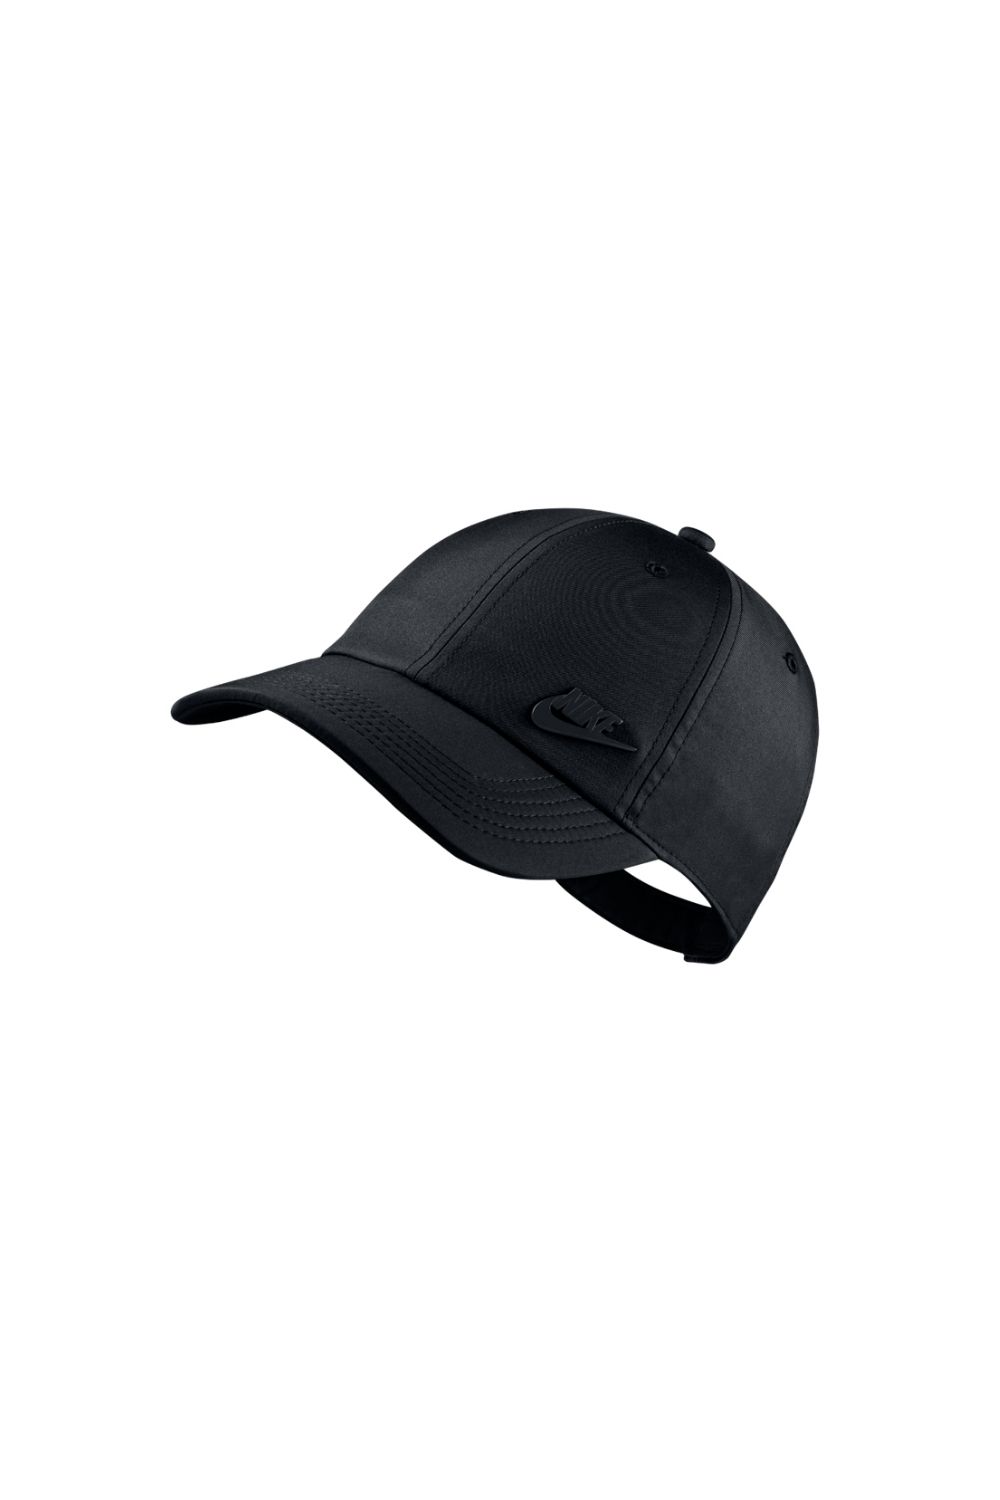 Γυναικεία/Αξεσουάρ/Καπέλα/Αθλητικά NIKE - Unisex καπέλο NIKE AROBILL H86 μαύρο